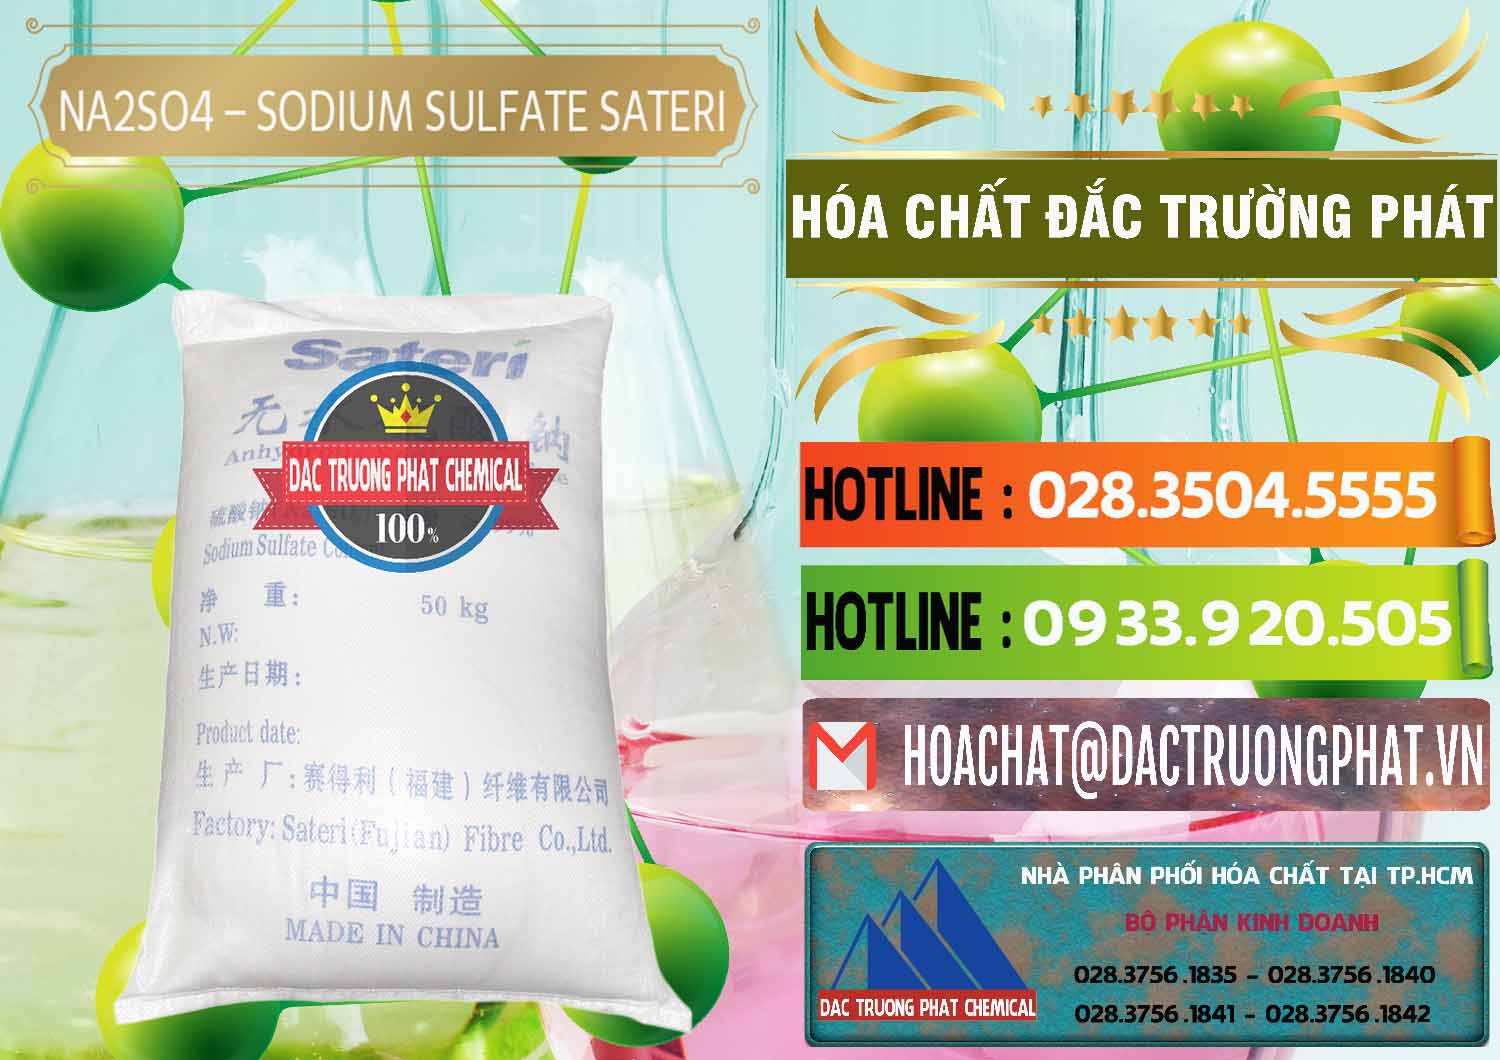 Cty chuyên bán và cung cấp Sodium Sulphate - Muối Sunfat Na2SO4 Sateri Trung Quốc China - 0100 - Công ty bán ( cung cấp ) hóa chất tại TP.HCM - cungcaphoachat.com.vn